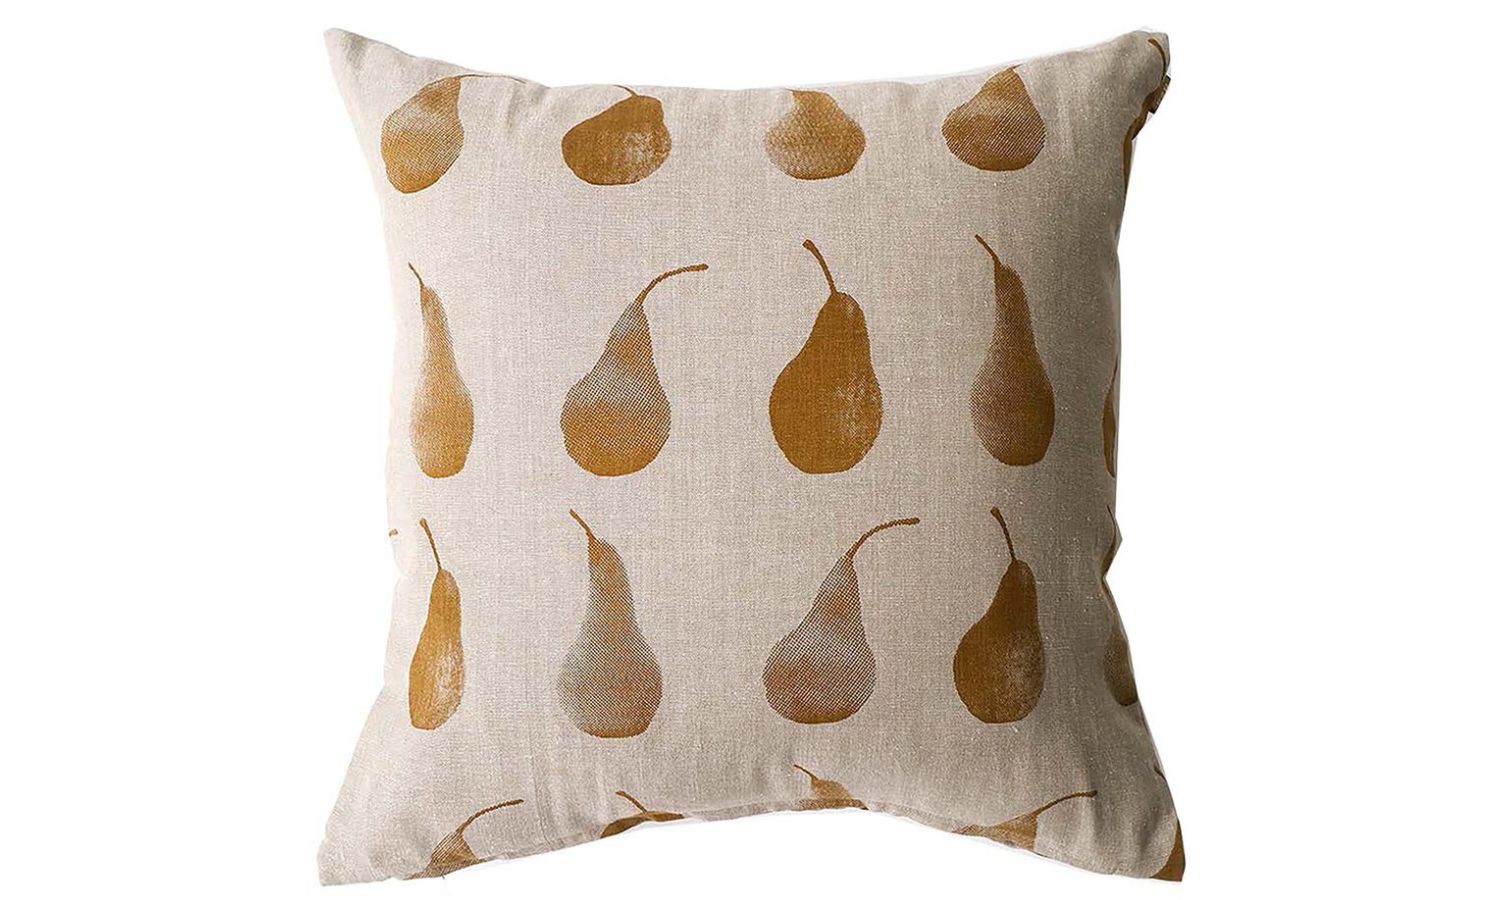 Pear cushion